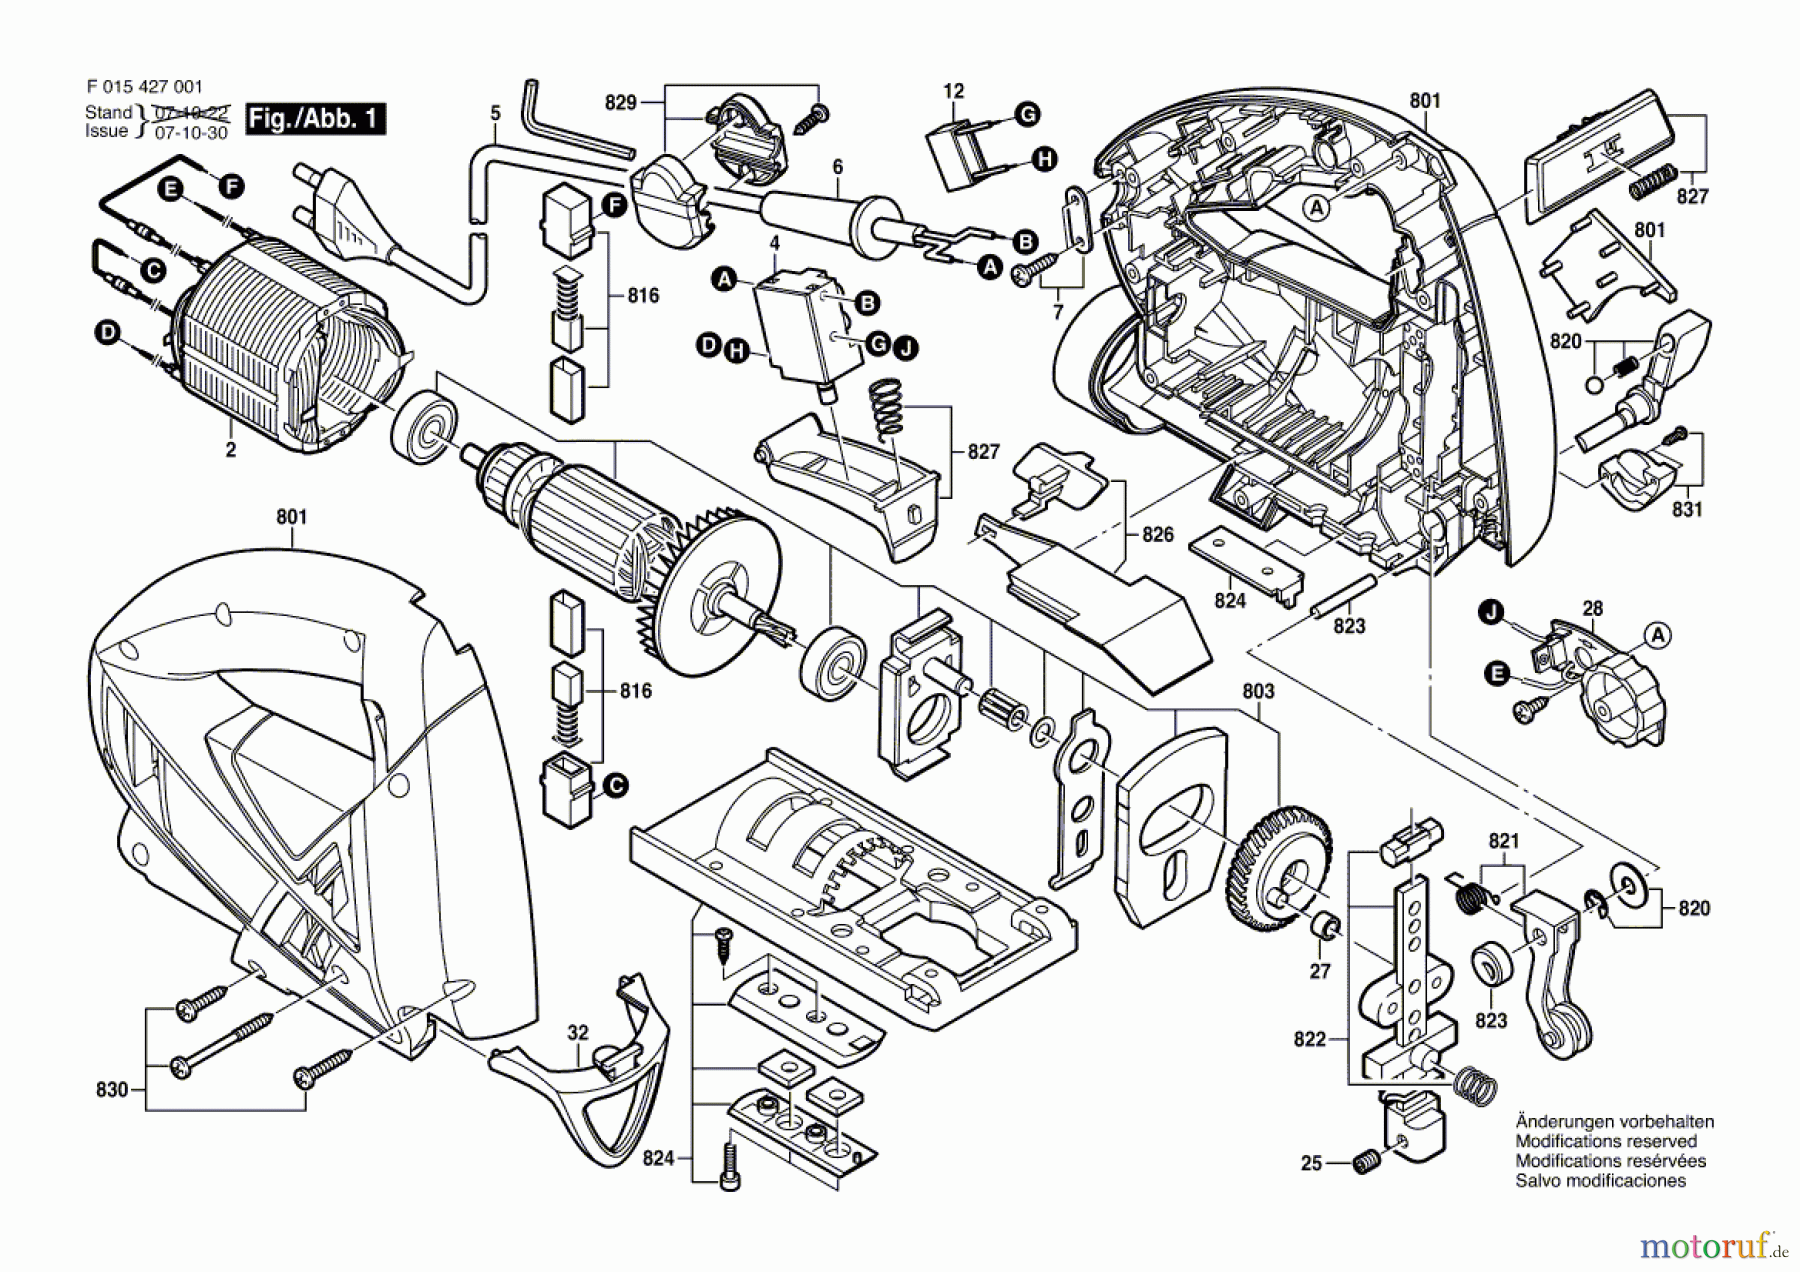  Bosch Werkzeug Stichsäge 4270 Seite 1